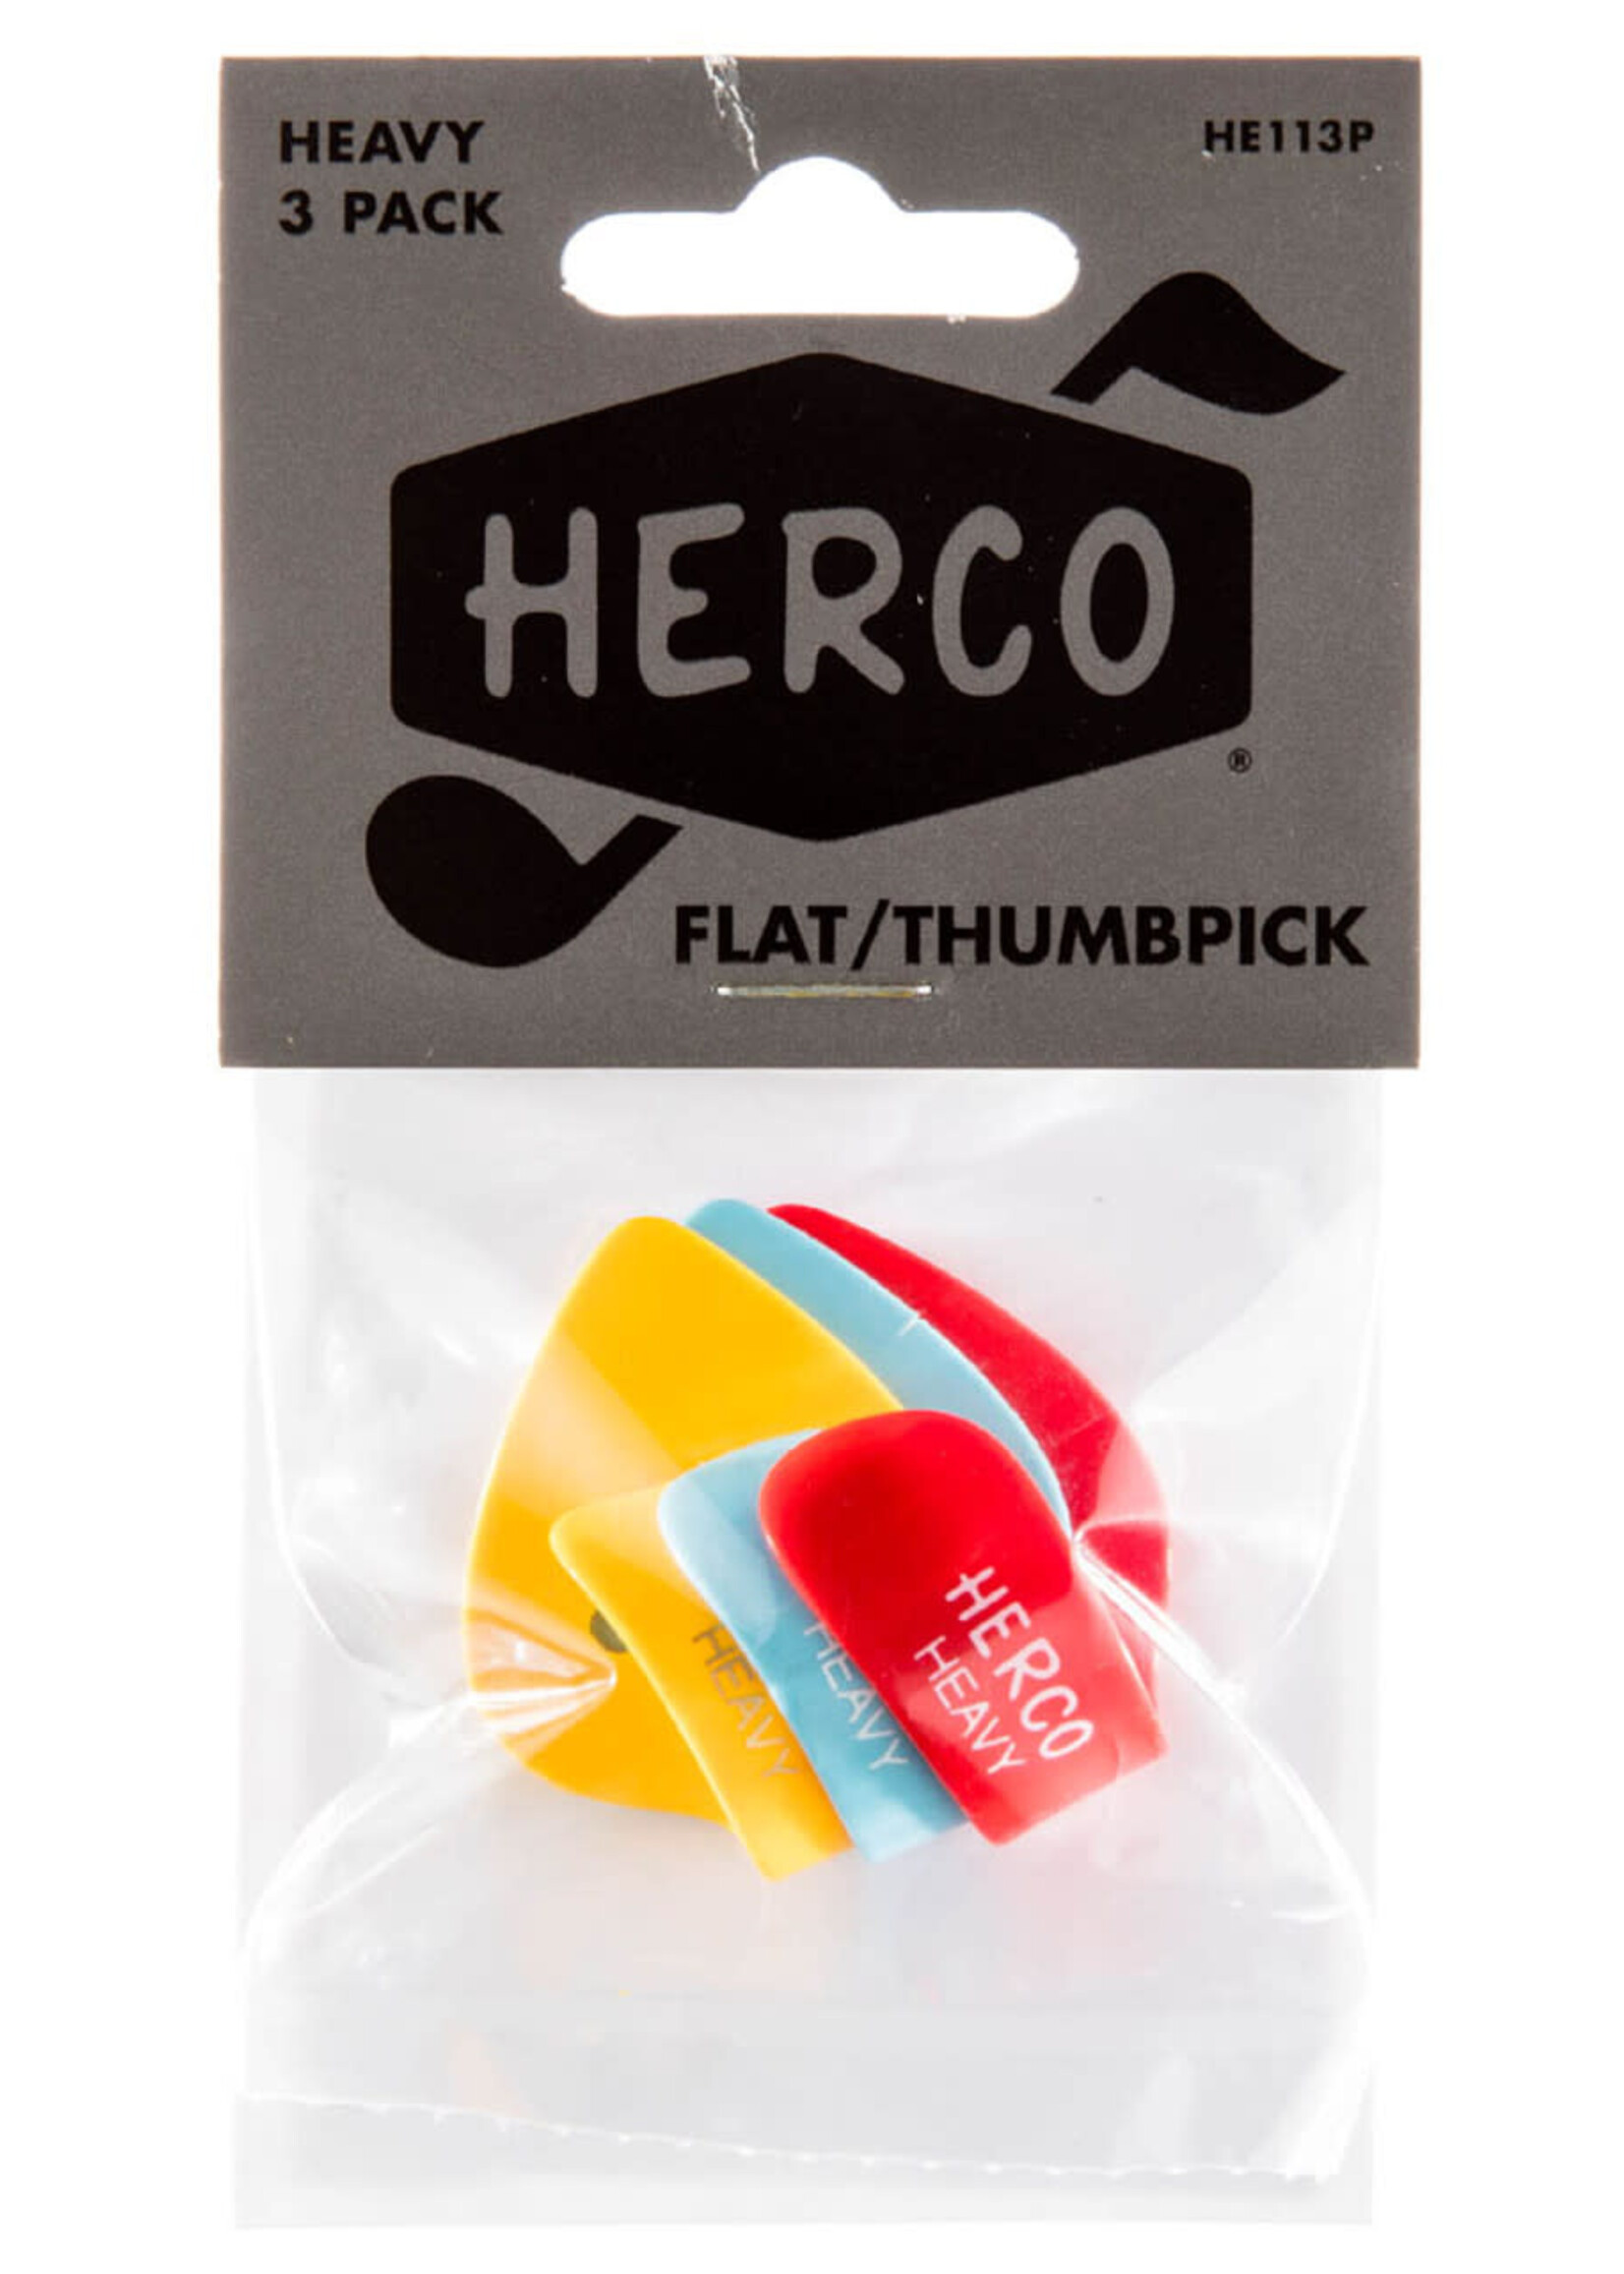 Herco Herco HE113P Heavy 3-PK Thumb/Flatpick